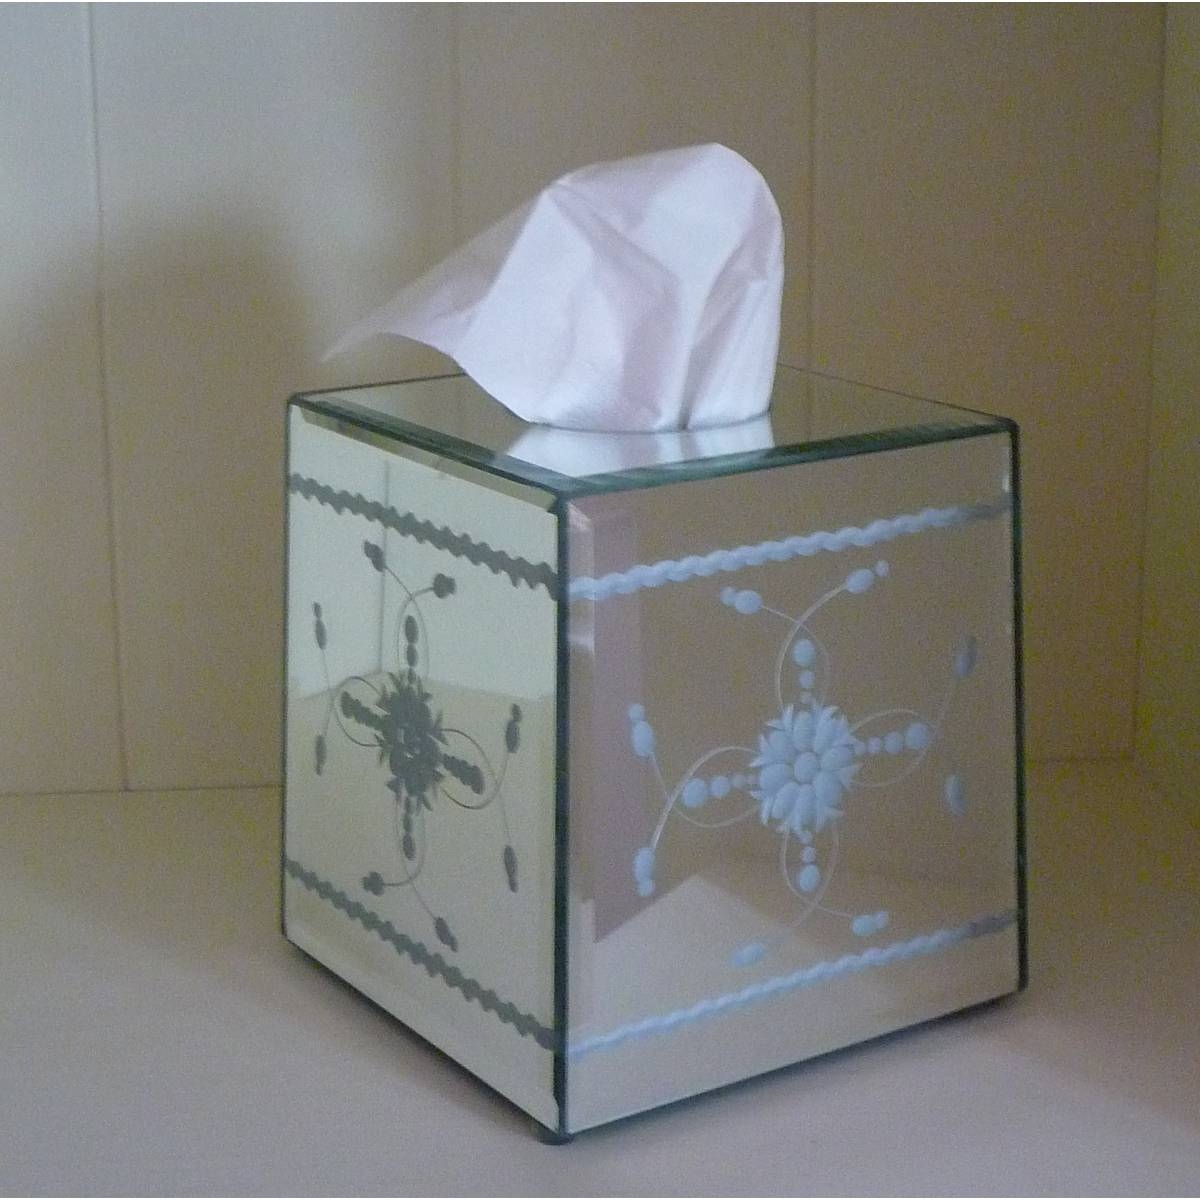 mirror tissue box cover